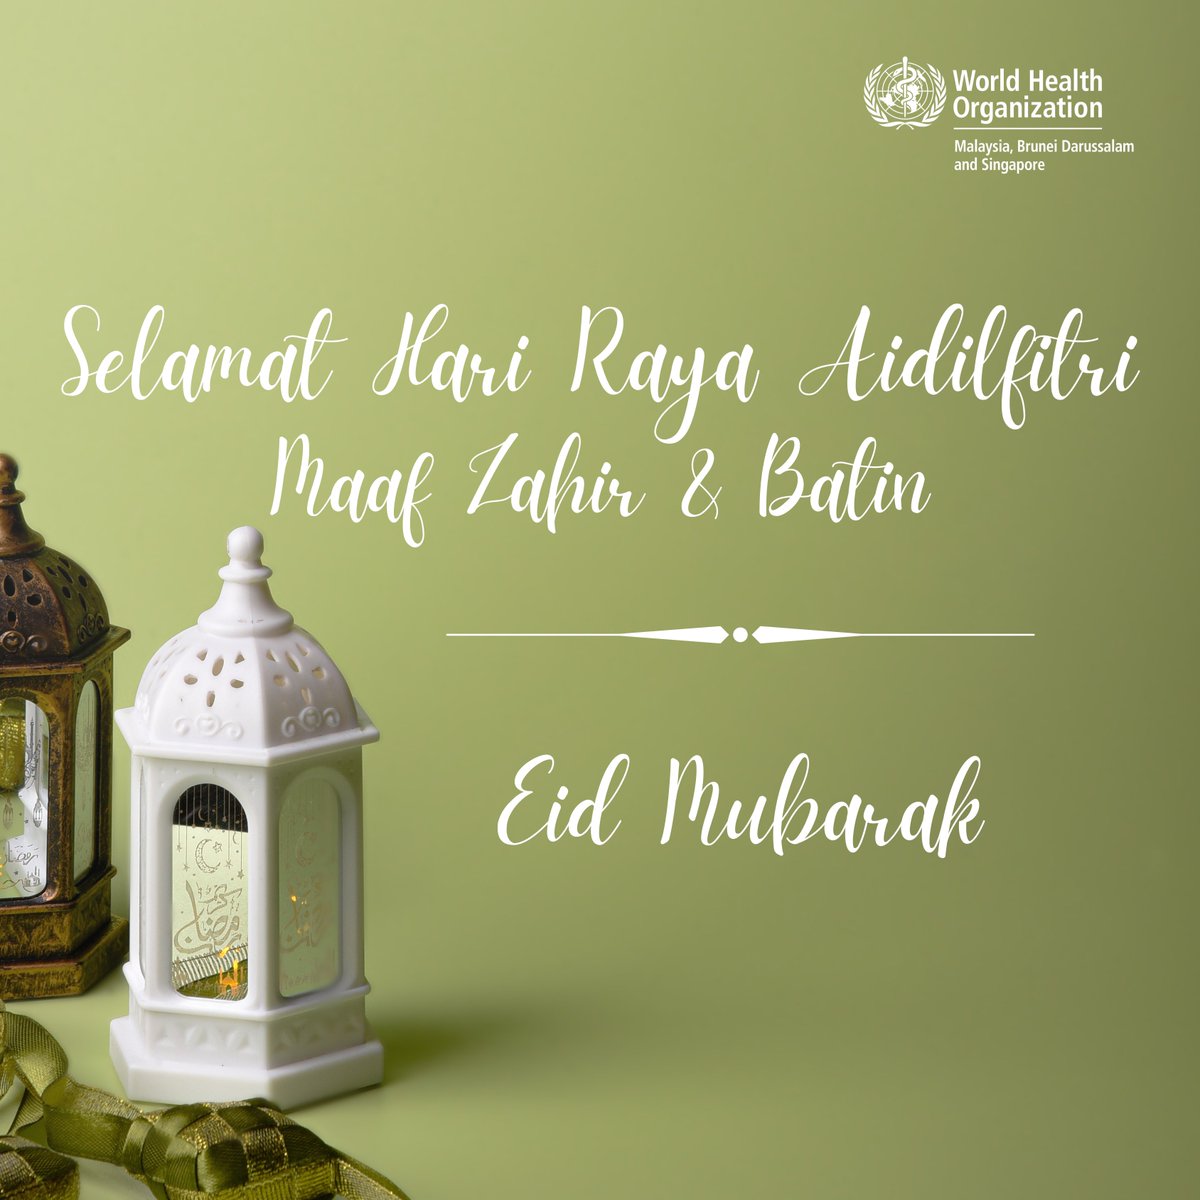 WHO Malaysia, Brunei Darussalam and Singapore mengucapkan kepada semua yang menyambut, Selamat Hari Raya Aidilfitri, Maaf Zahir & Batin! 💫 Semoga perayaan ini membawa kegembiraan, kebahagiaan dan kesihatan yang baik kepada anda dan orang tersayang.